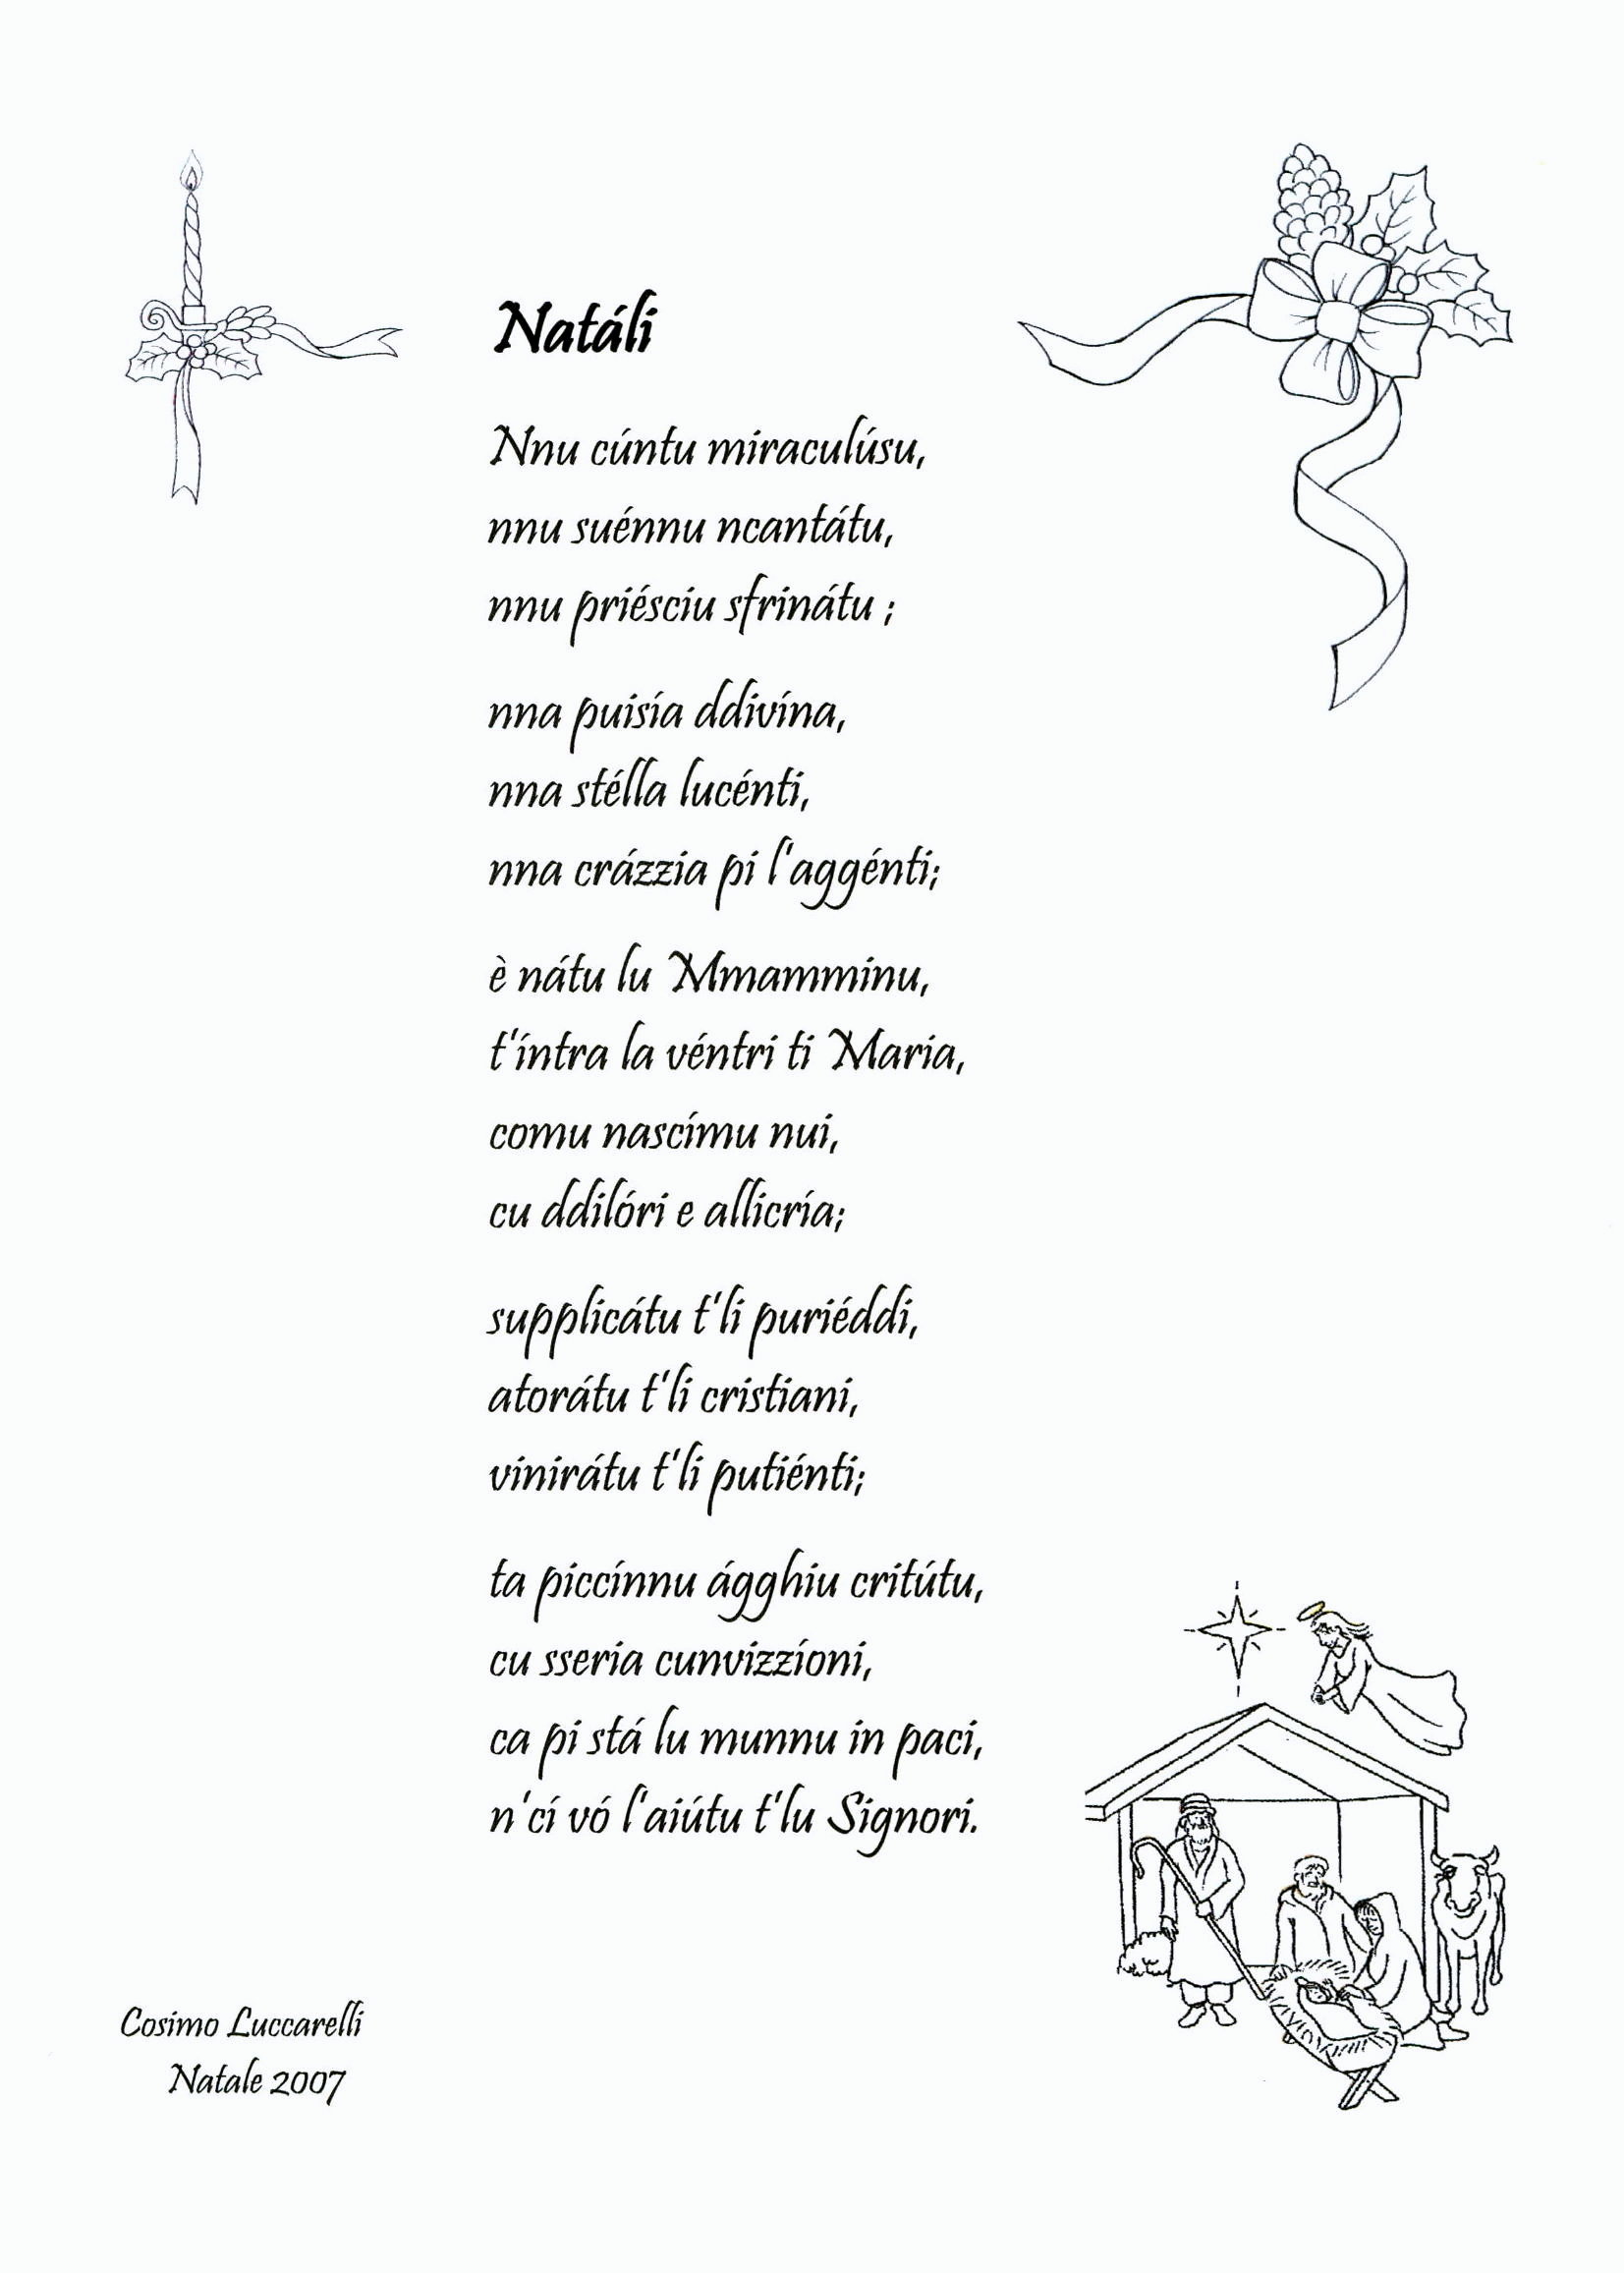 Poesie Di Natale In Italiano.Antologia Di Poesie Dialettali Per Natale Grottagliesita Blog